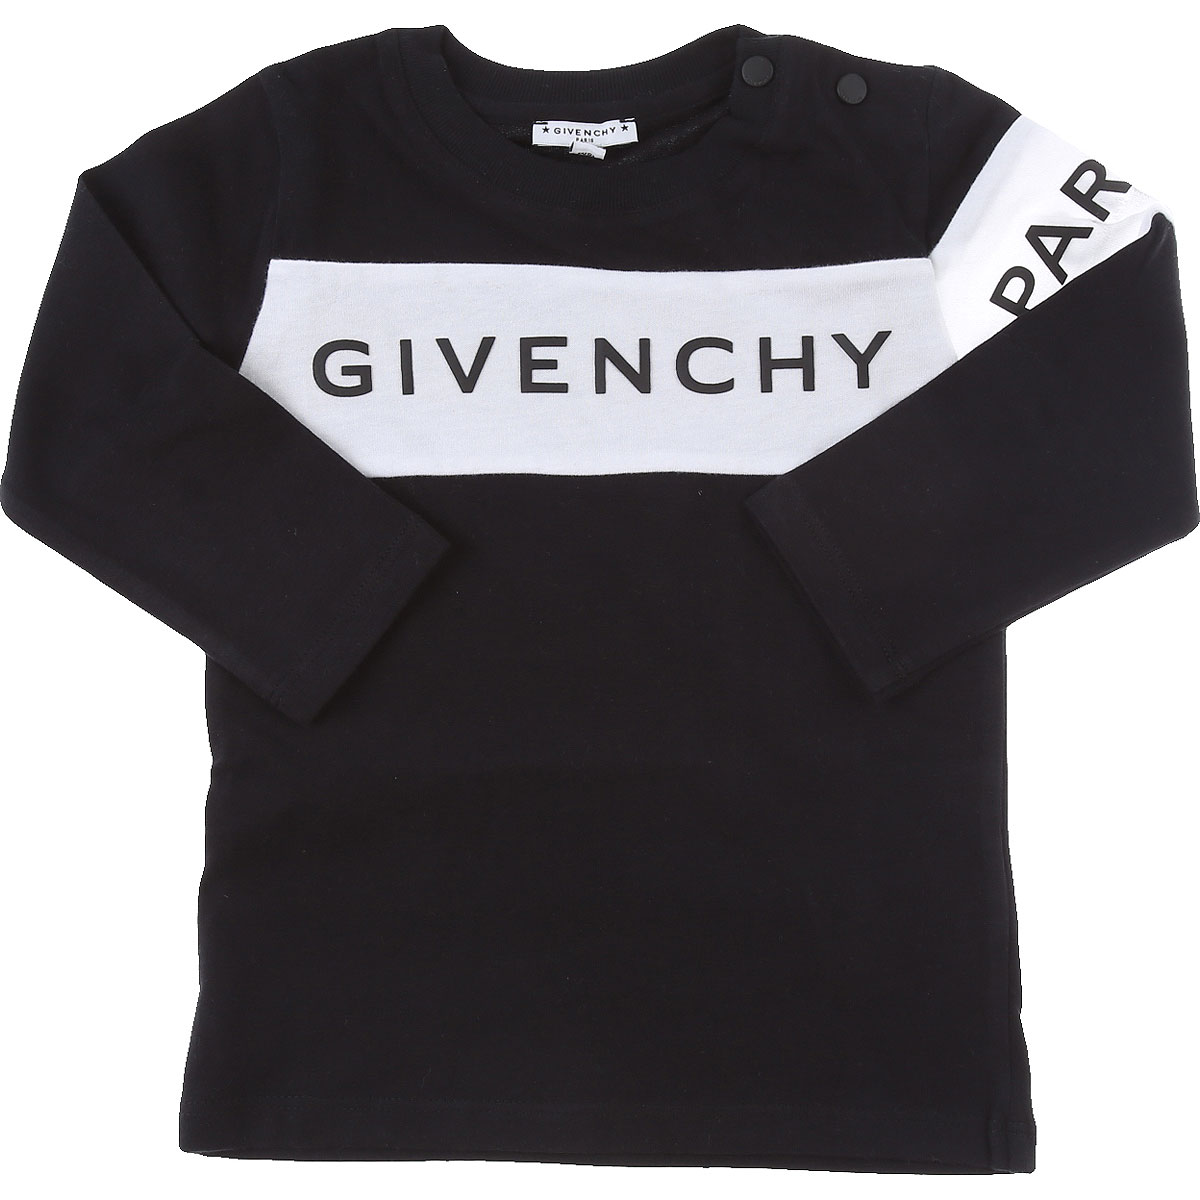 Givenchy Baby T-Shirt für Jungen Günstig im Sale, Schwarz, Baumwolle, 2017, 18M 2Y 3Y 9M